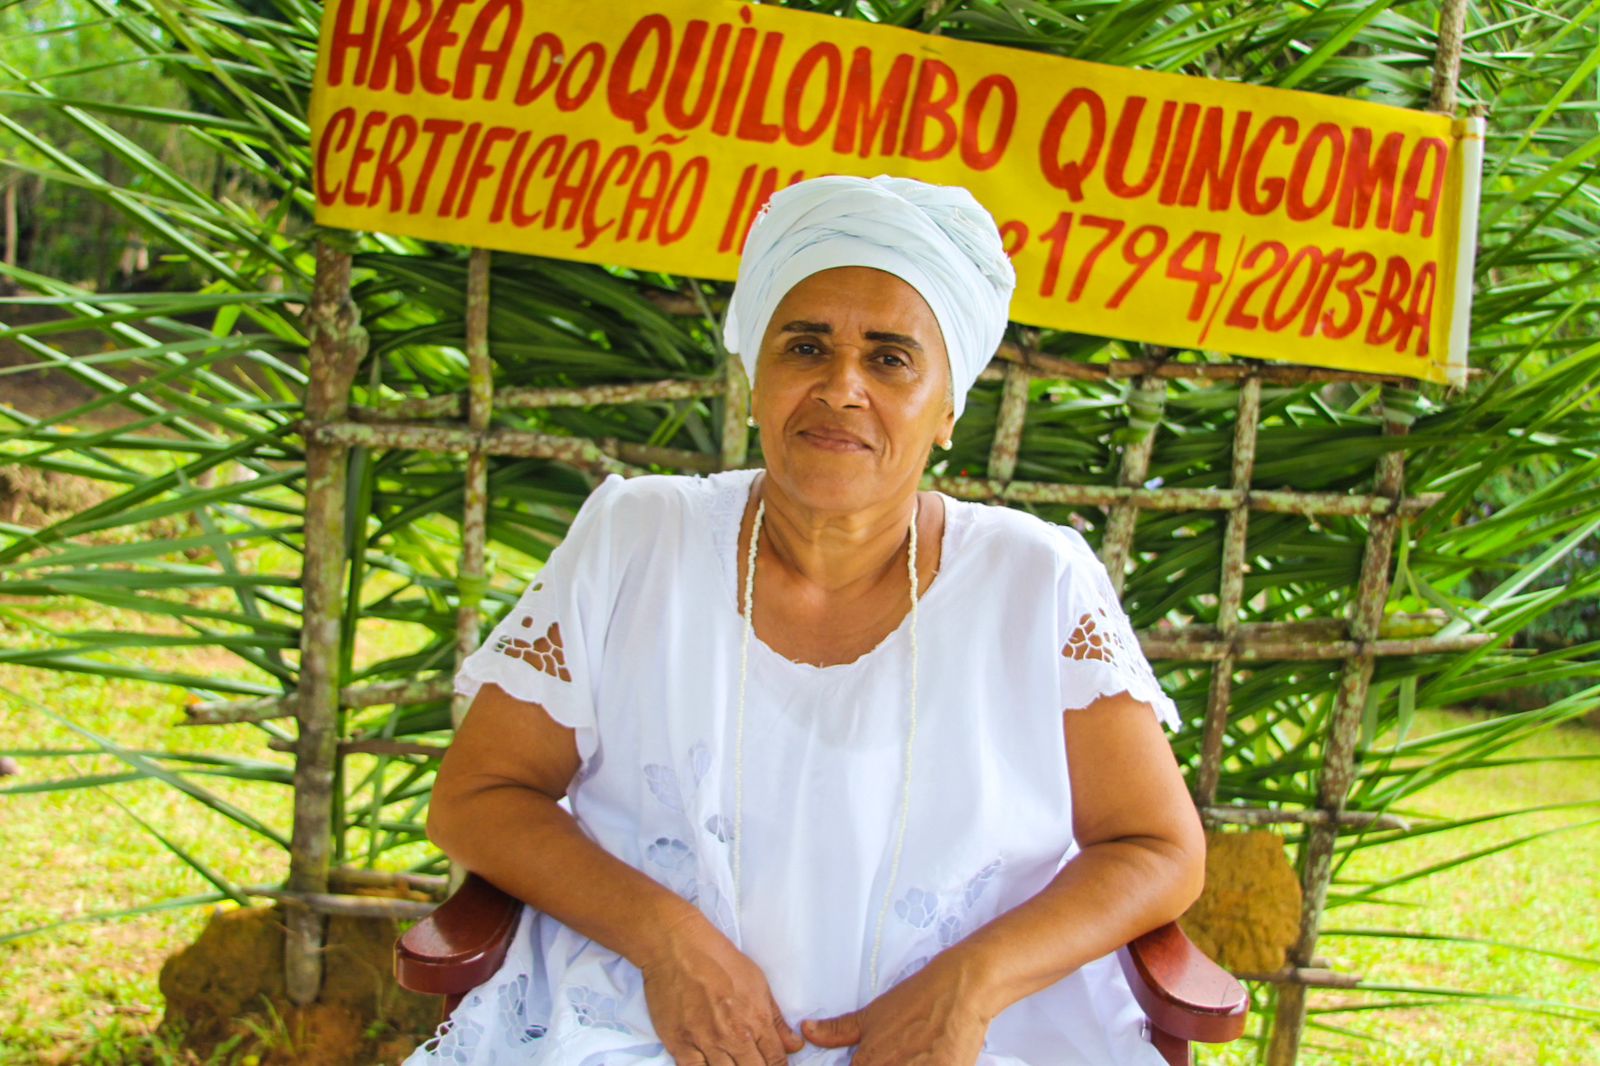 Donana, mãe do Quilombo de Quingoma, vibra com o feito da comunidade. Foto: Domingos Junior/BNews